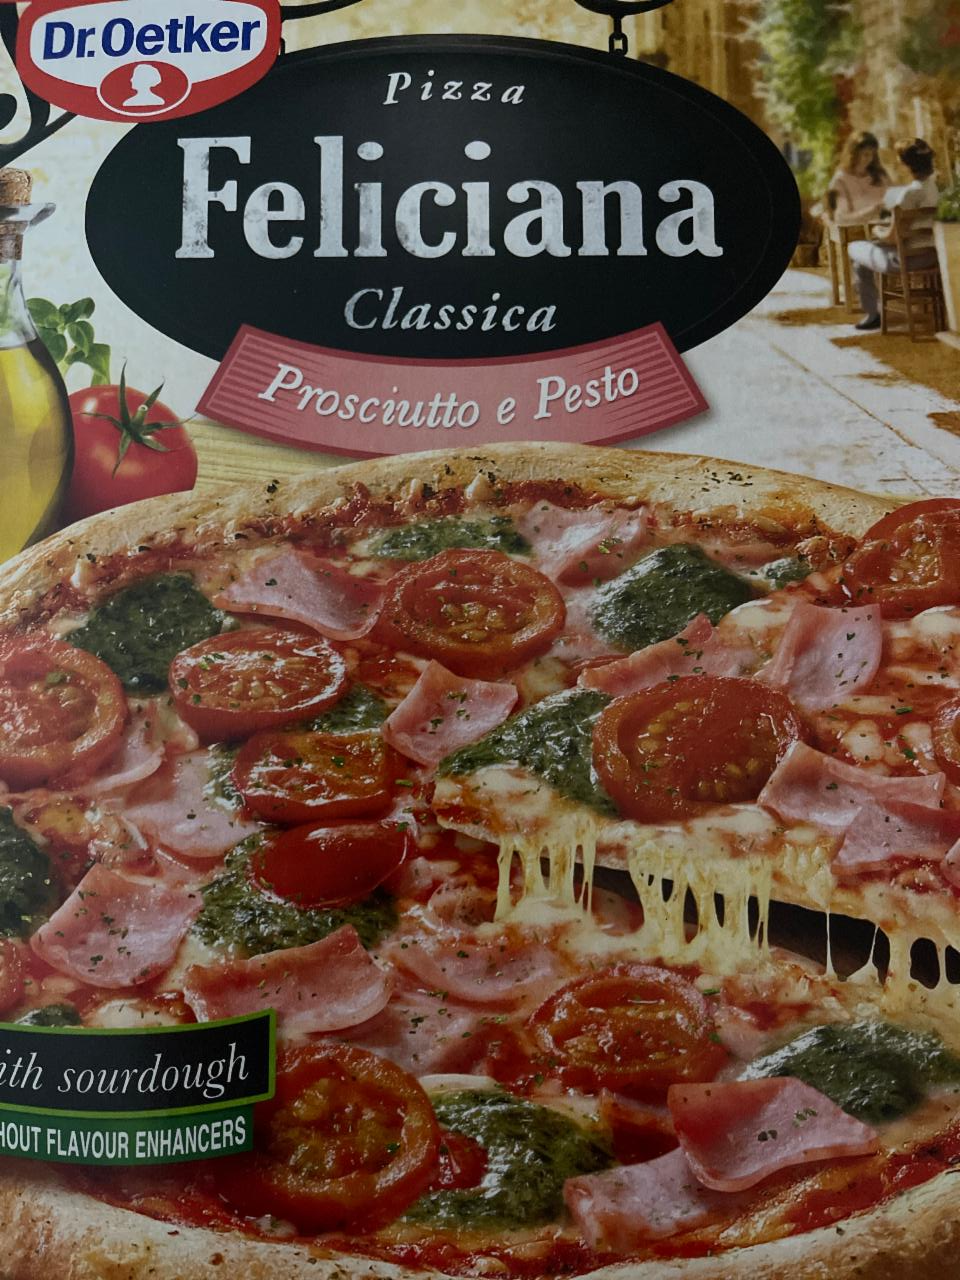 Zdjęcia - Dr. Oetker Feliciana Classica Pizza Prosciutto e Pesto 360 g